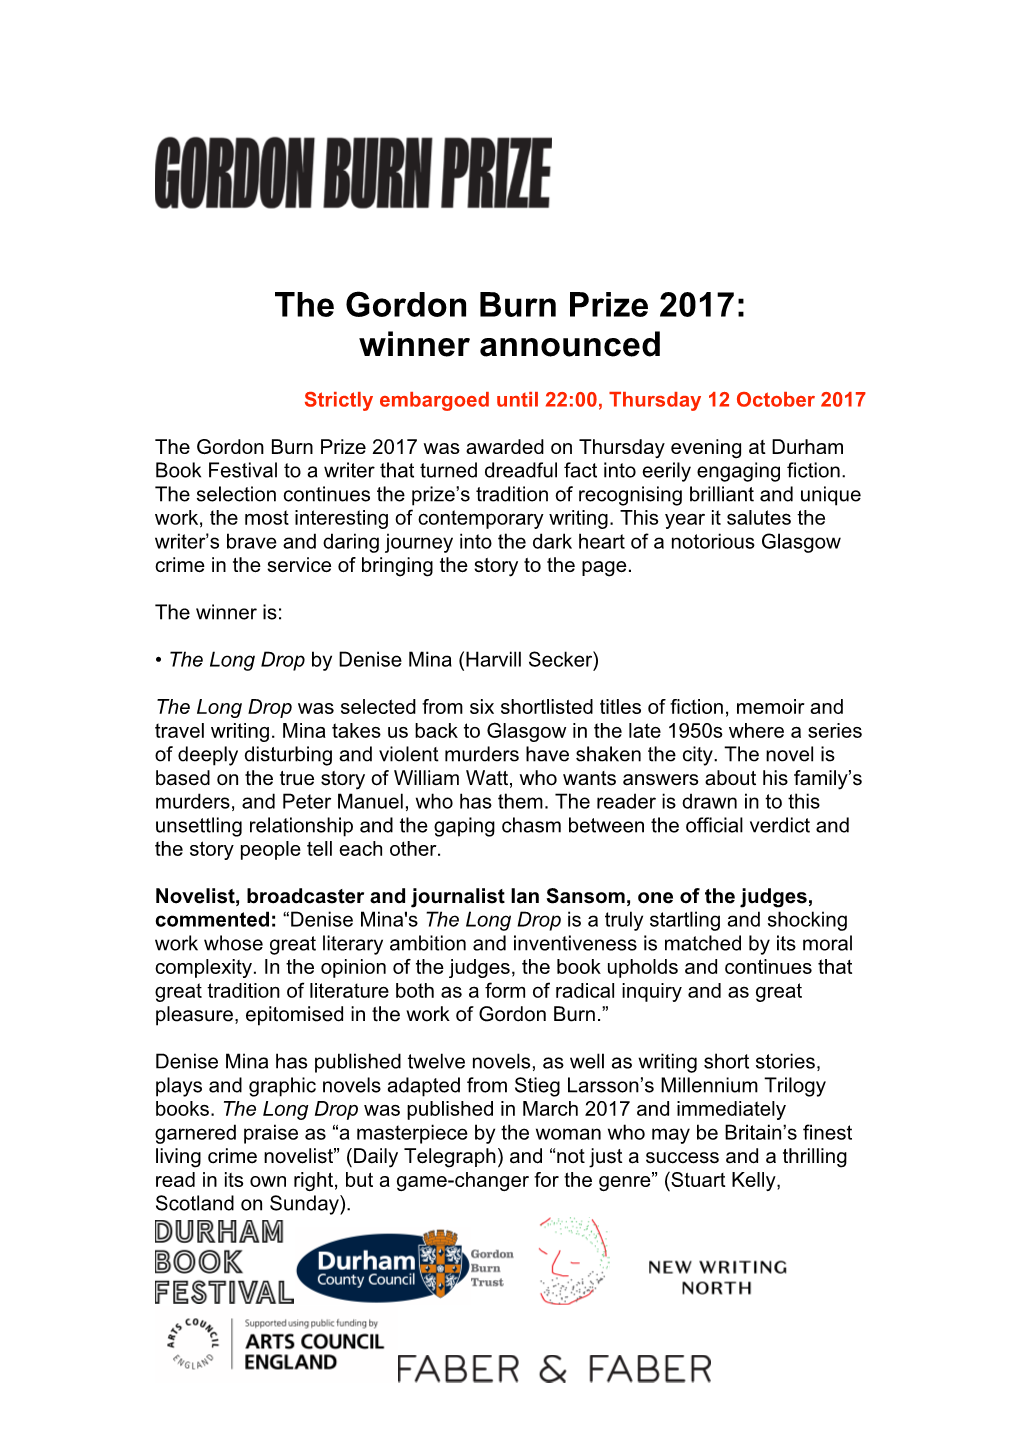 The Gordon Burn Prize 2017: Winner Announced